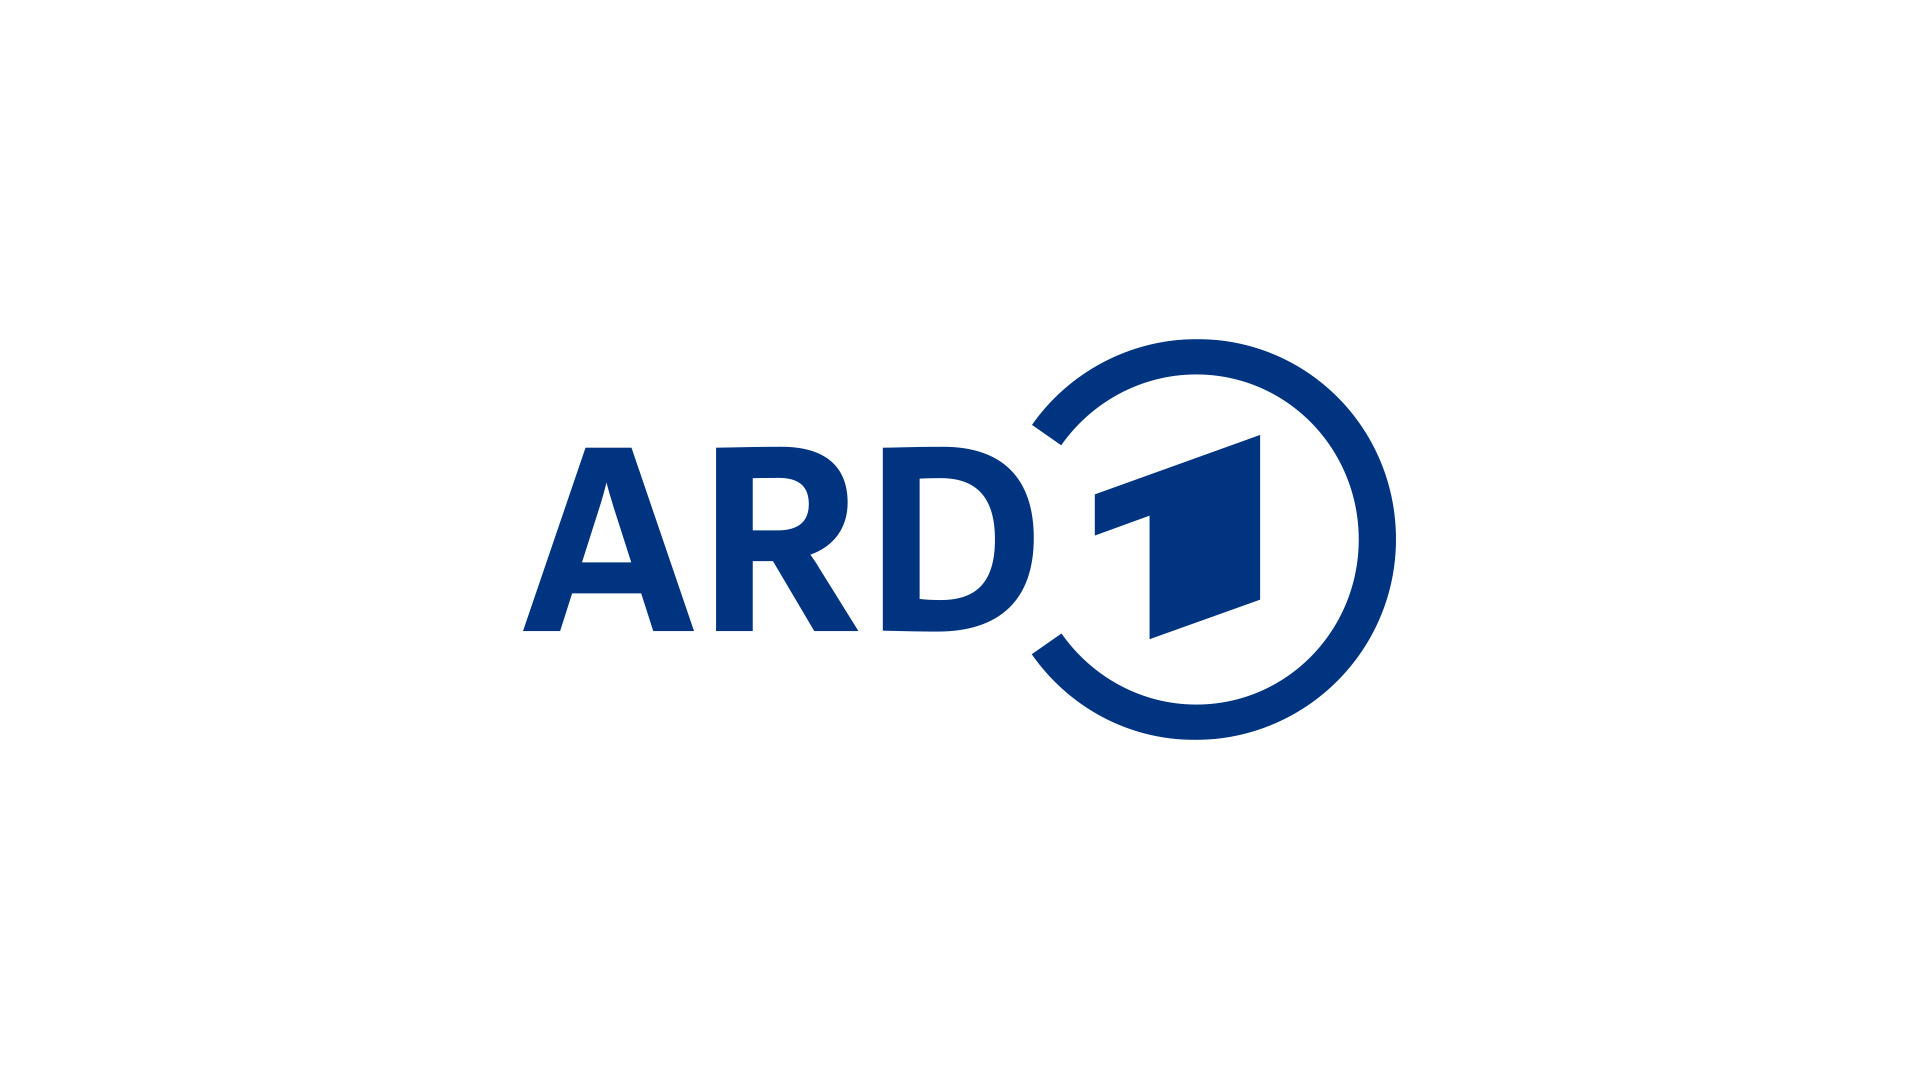 Literaturbühne von ARD, ZDF und 3sat
MITTELDEUTSCHER RUNDFUNK
Anstalt des Öffentlichen Rechts